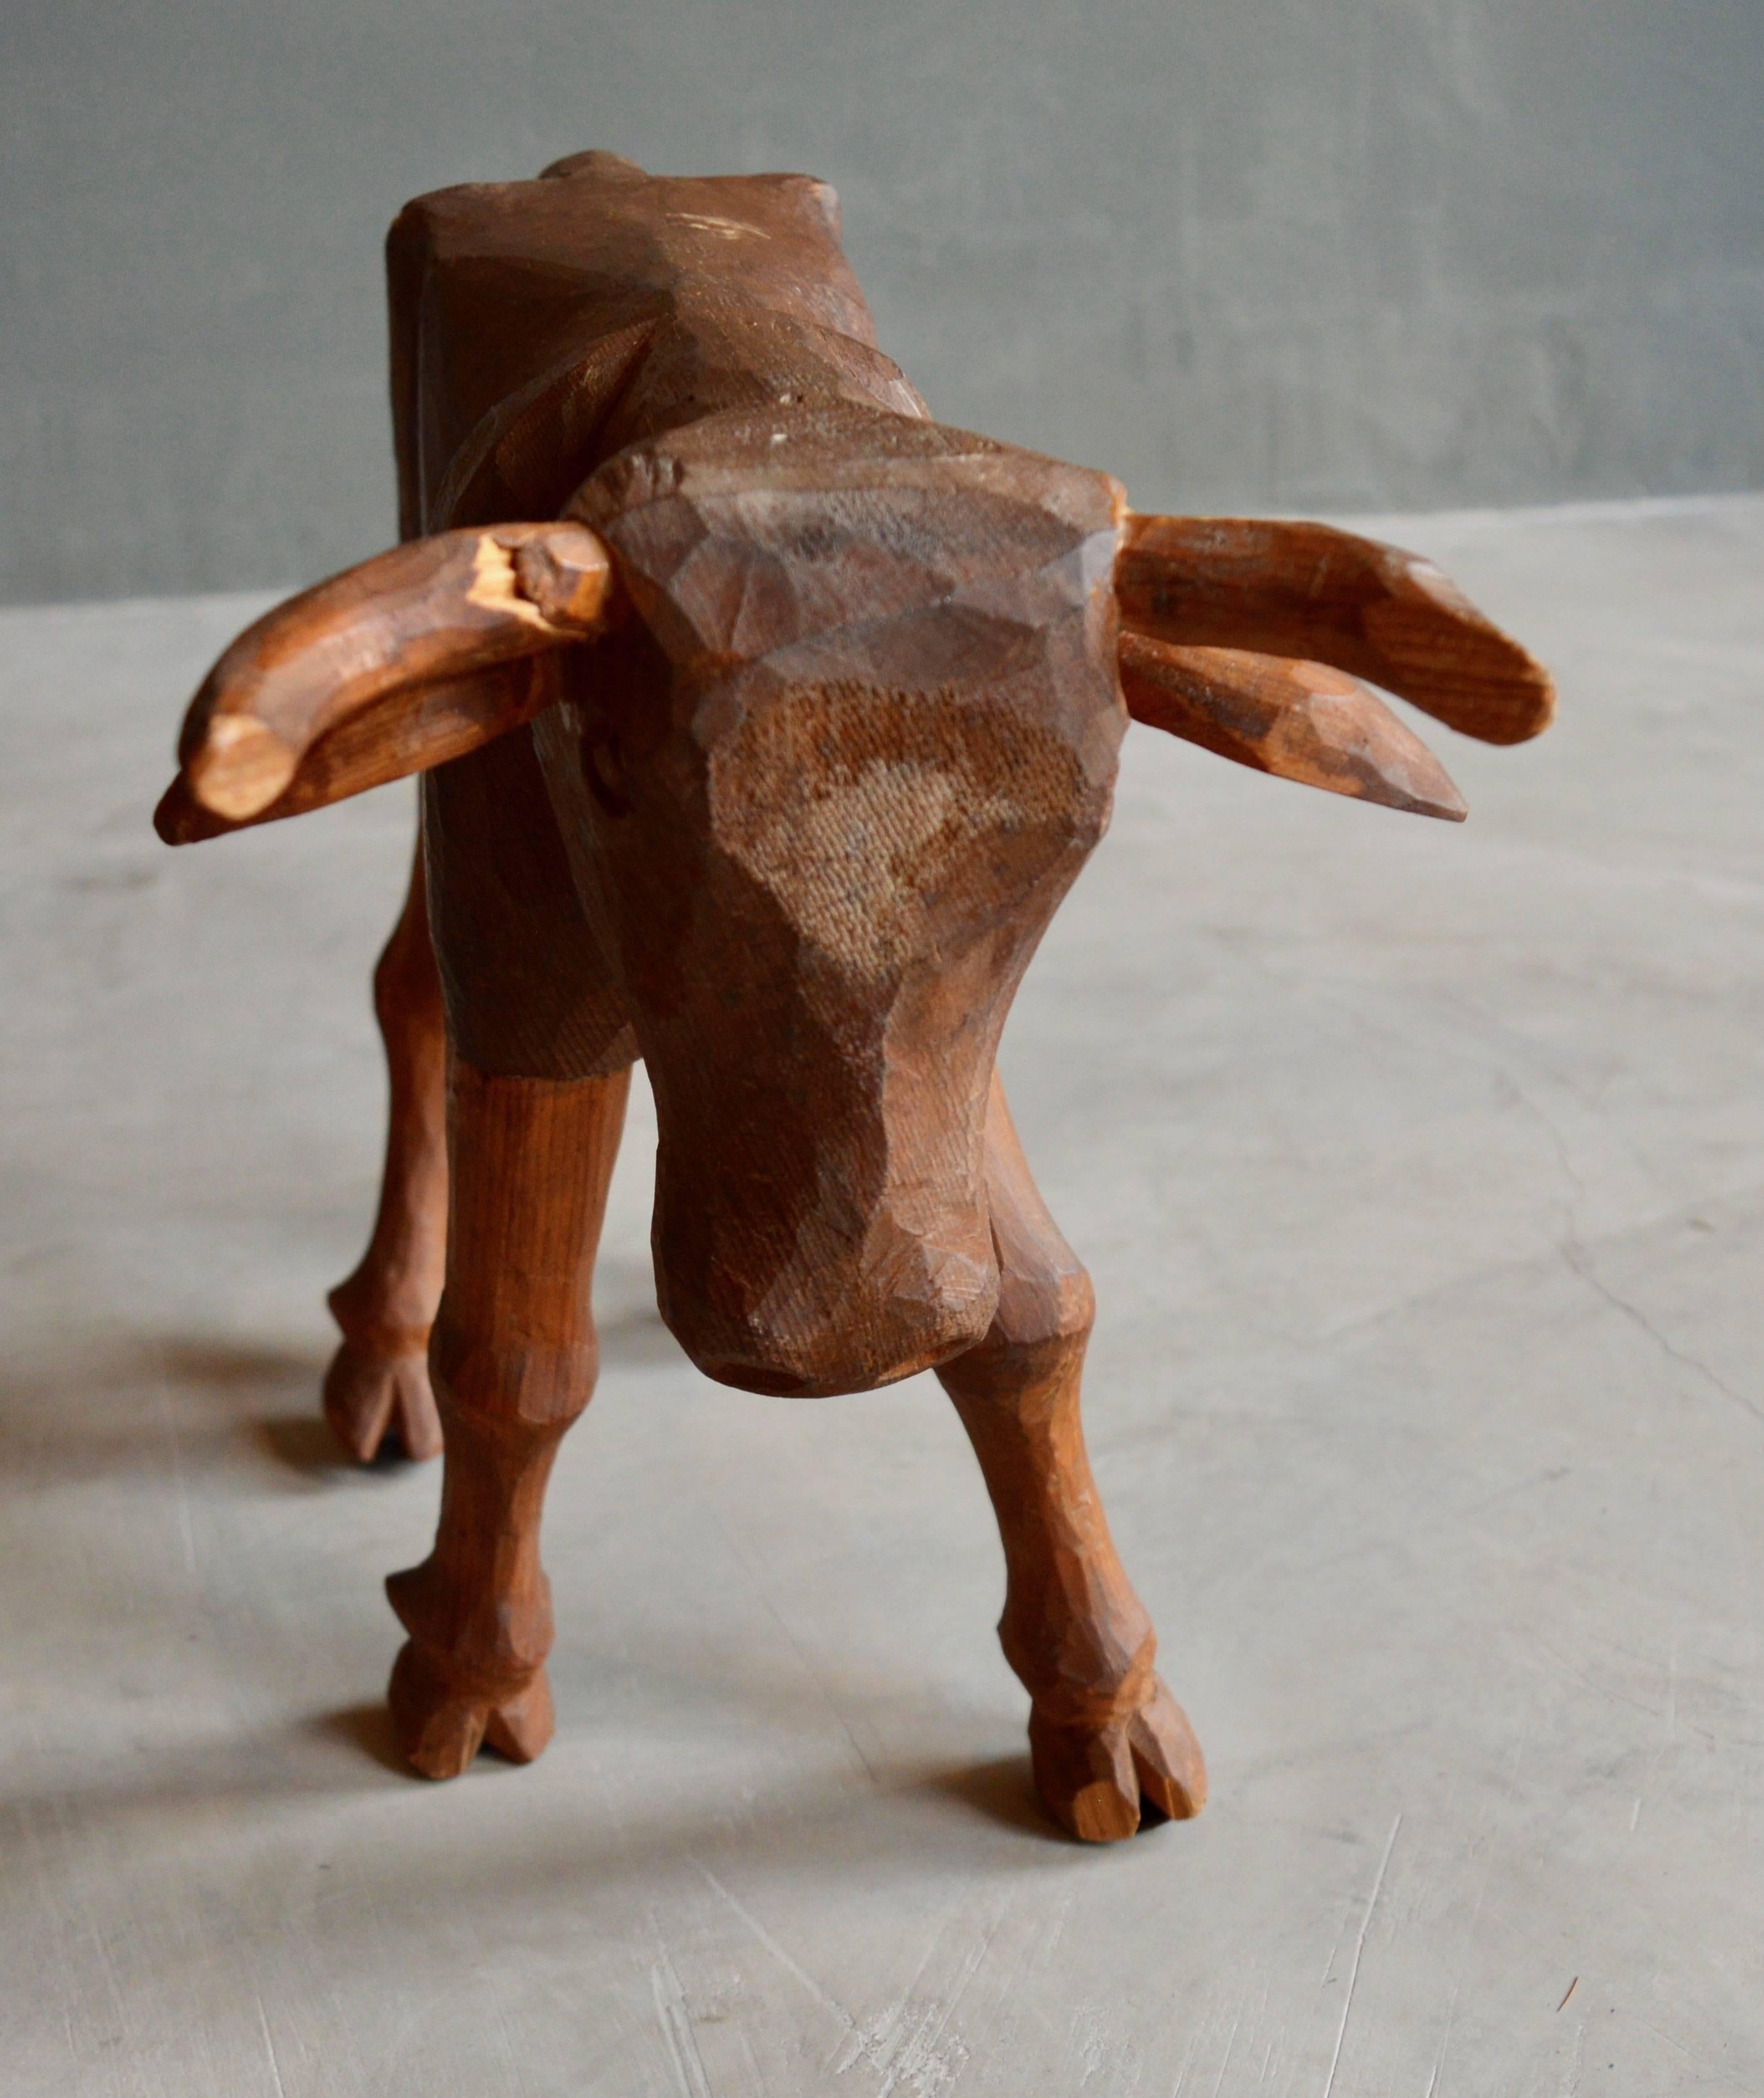 Wood Folk Art Primitive Hand-Carved Bull For Sale